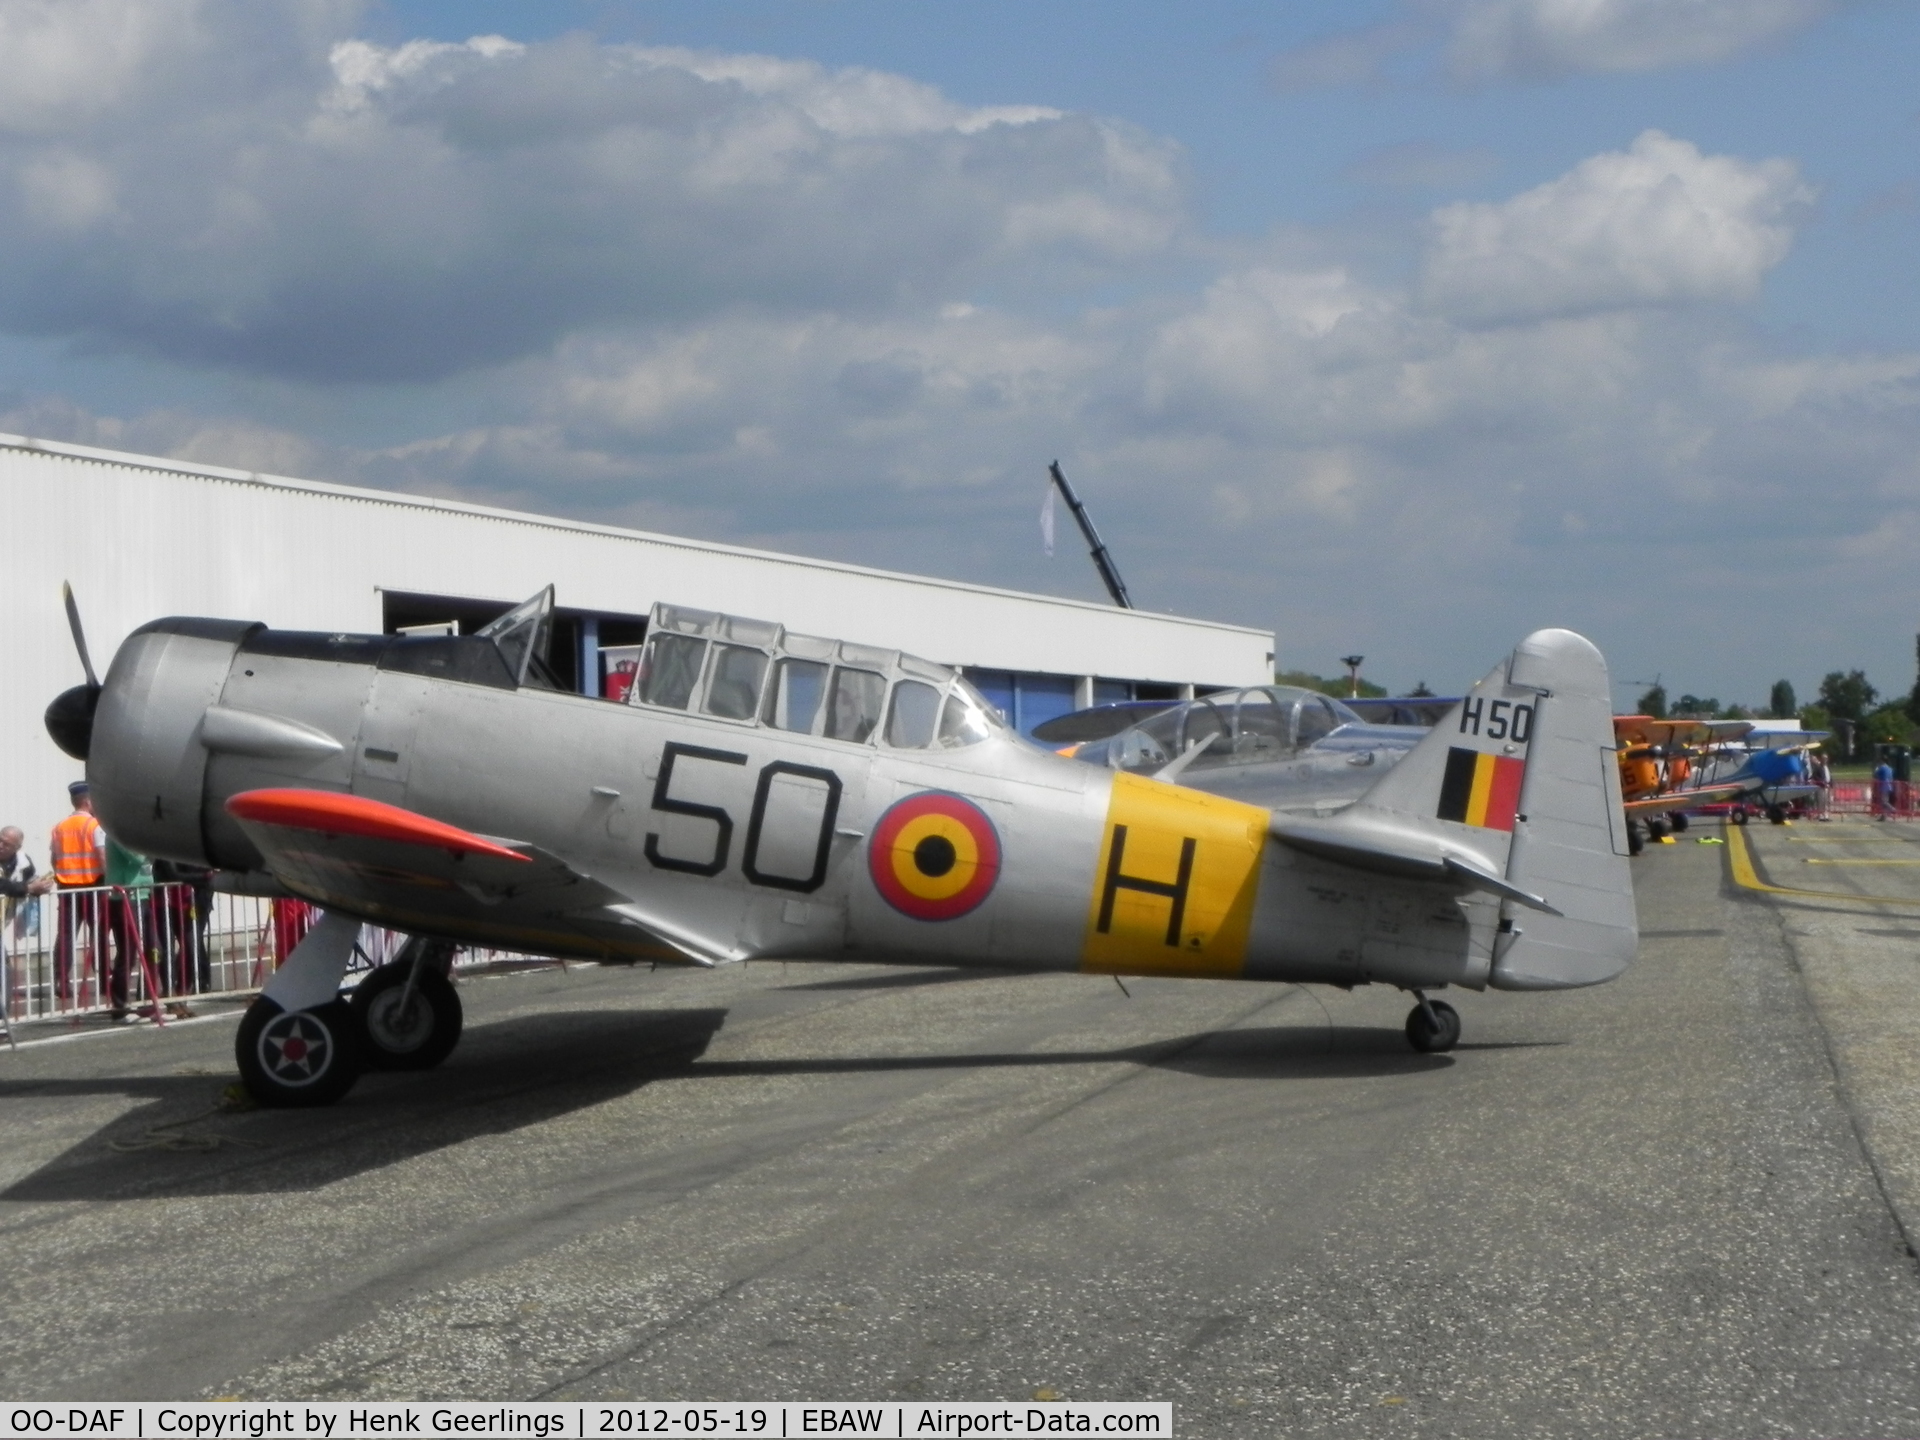 OO-DAF, 1944 Noorduyn AT-16 Harvard IIB C/N 14A-1494, Stampe Fly In 2012 , Deurne Airport